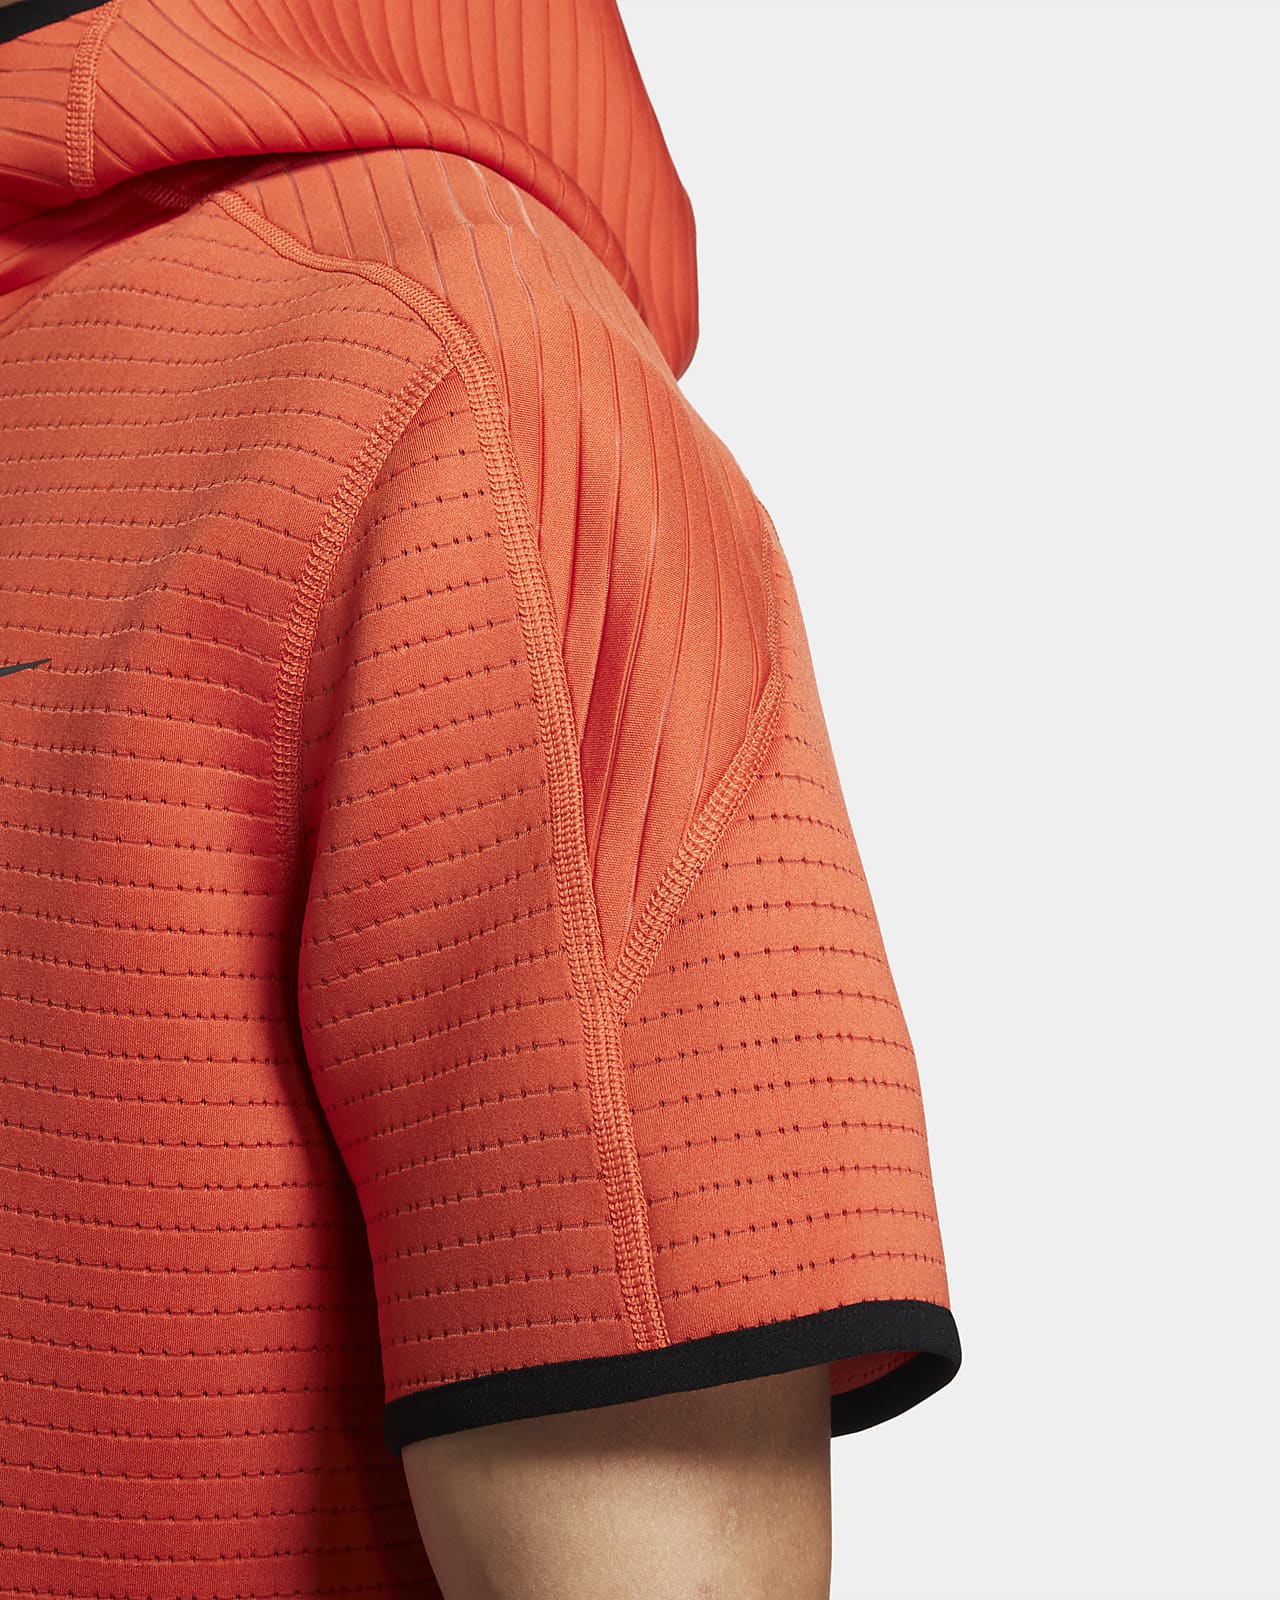 Short-Sleeve 1/4-Zip Hoodie. Nike 